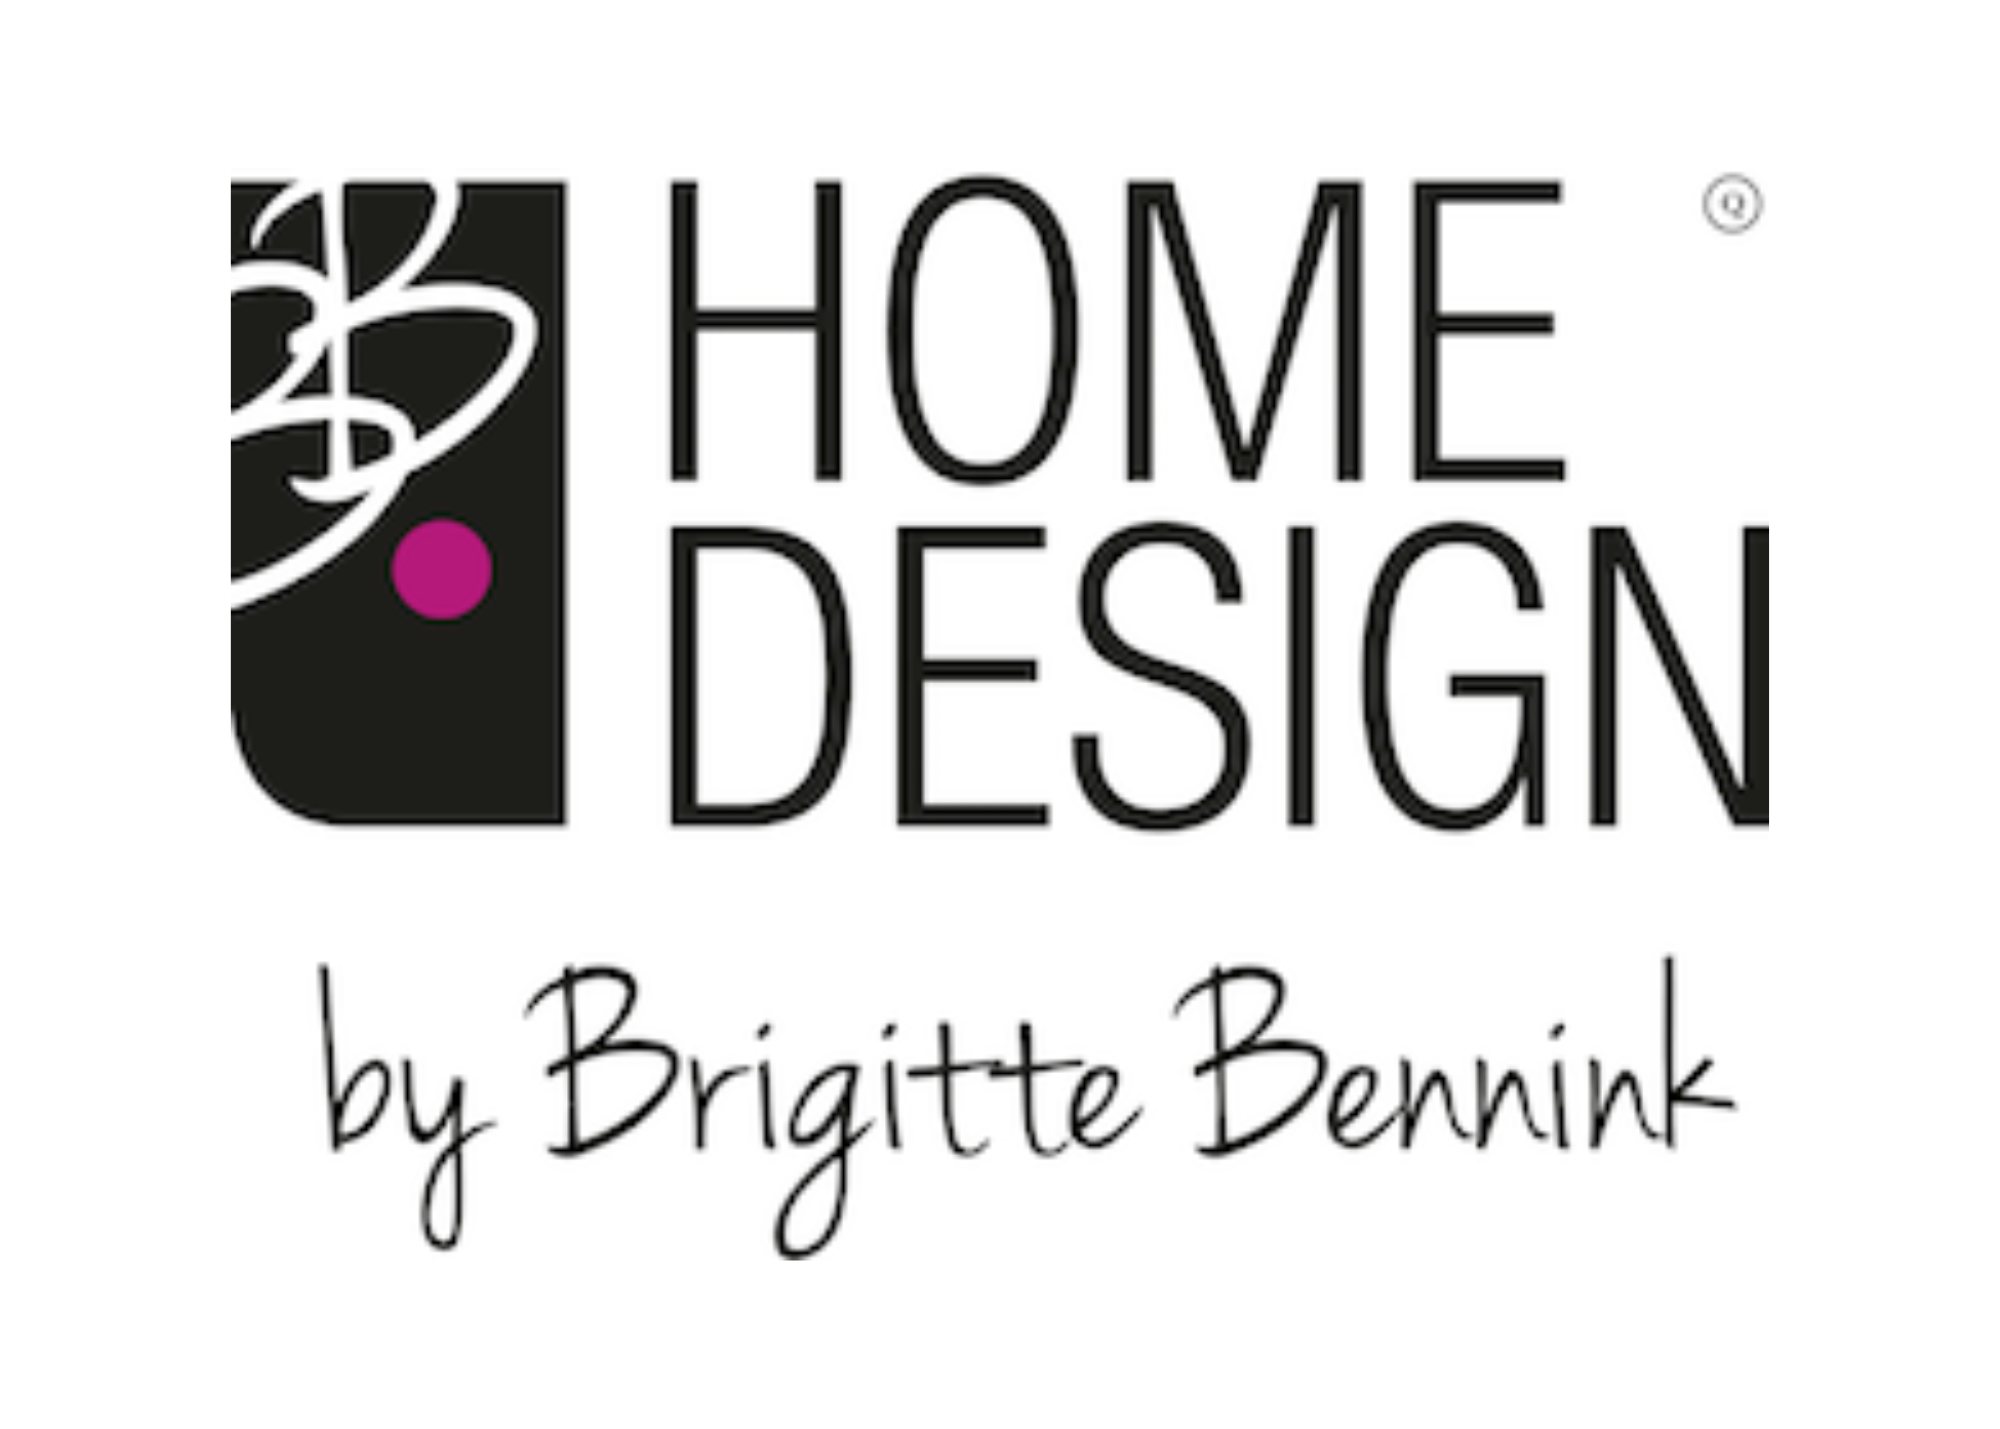 Home Design Brigitte Bennink